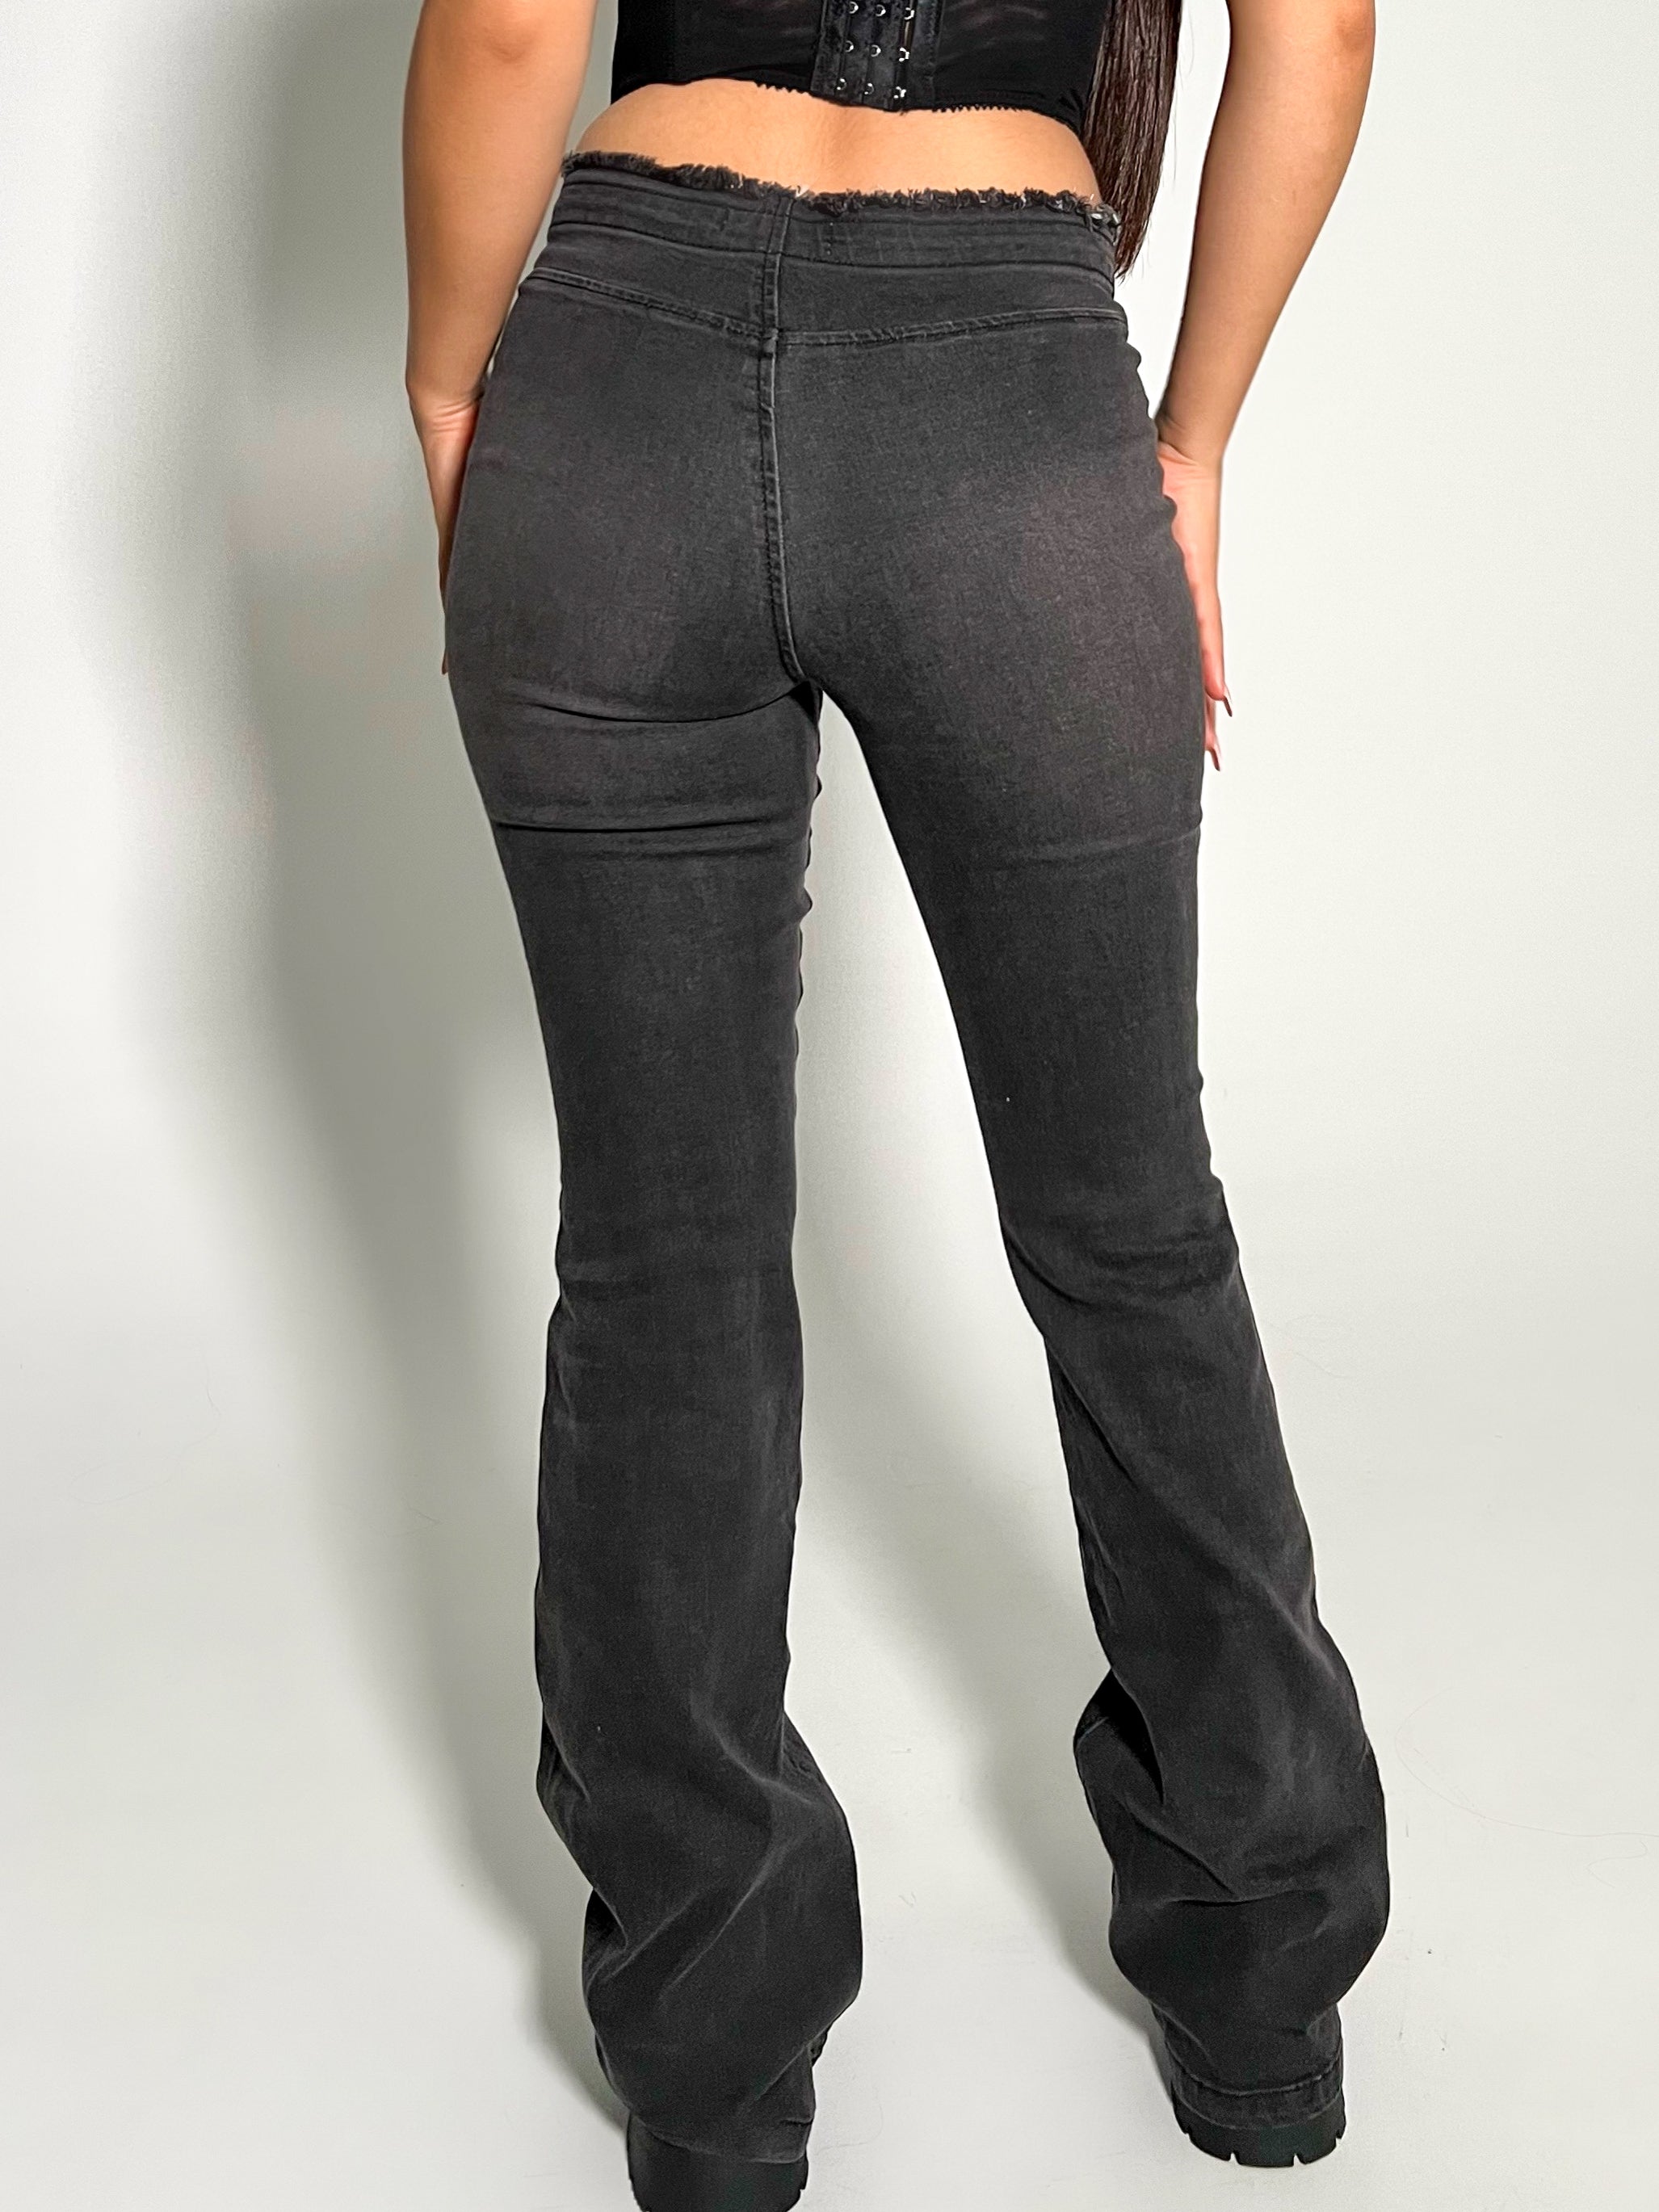 Kristie Flare Jeans (Black) - Laura's Boutique, Inc